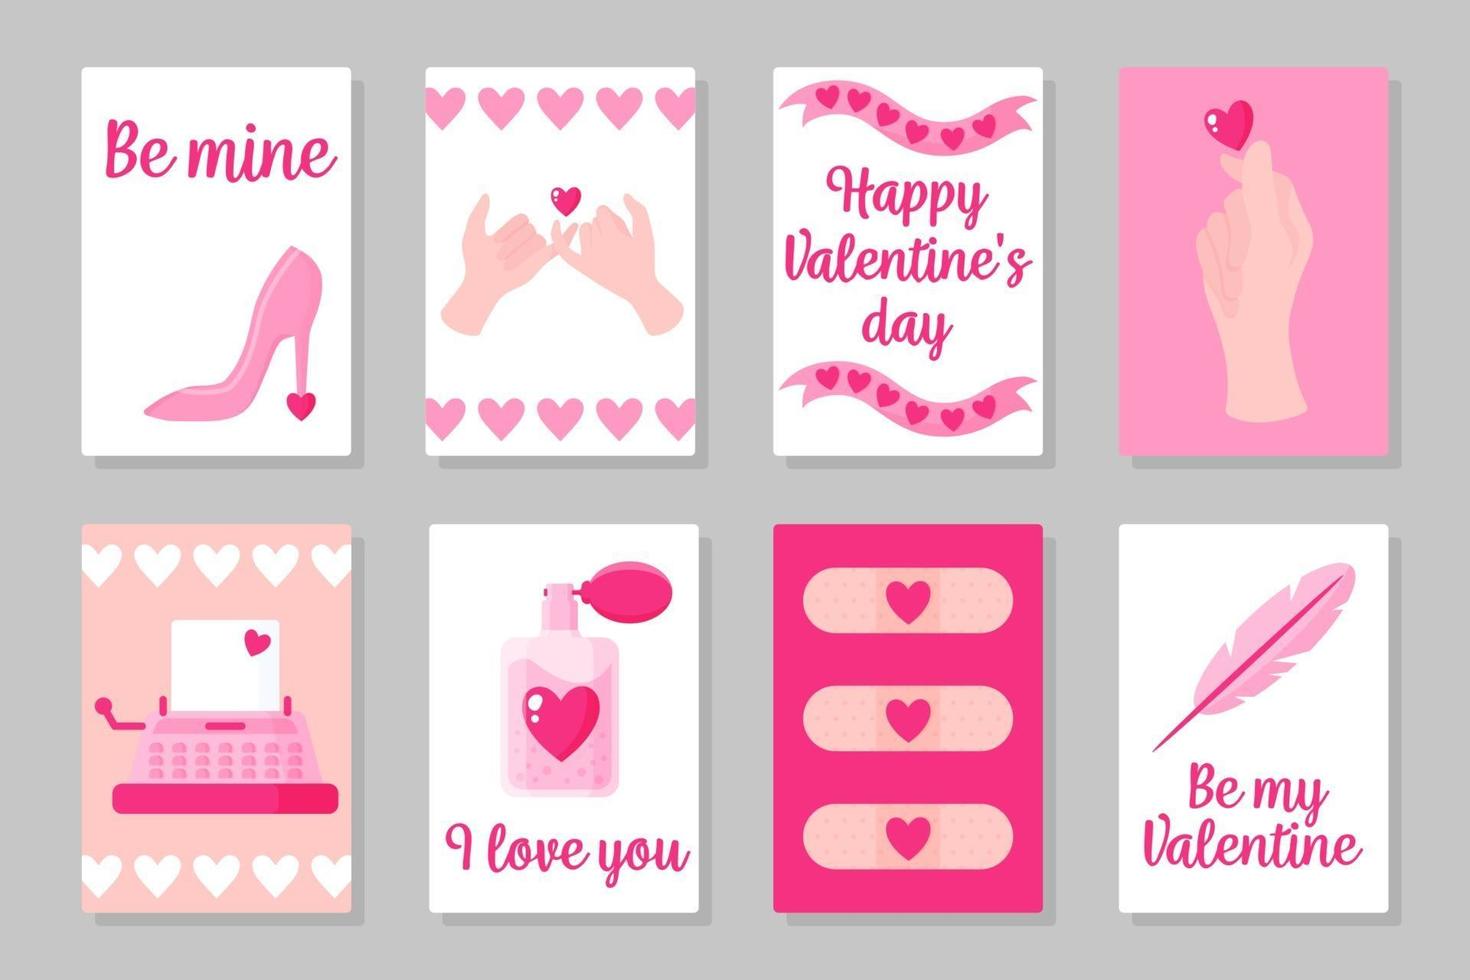 Satz von rosa, weißen und blauen farbigen Karten für Valentinstag oder Hochzeit. Vektor flaches Design lokalisiert auf grauem Hintergrund